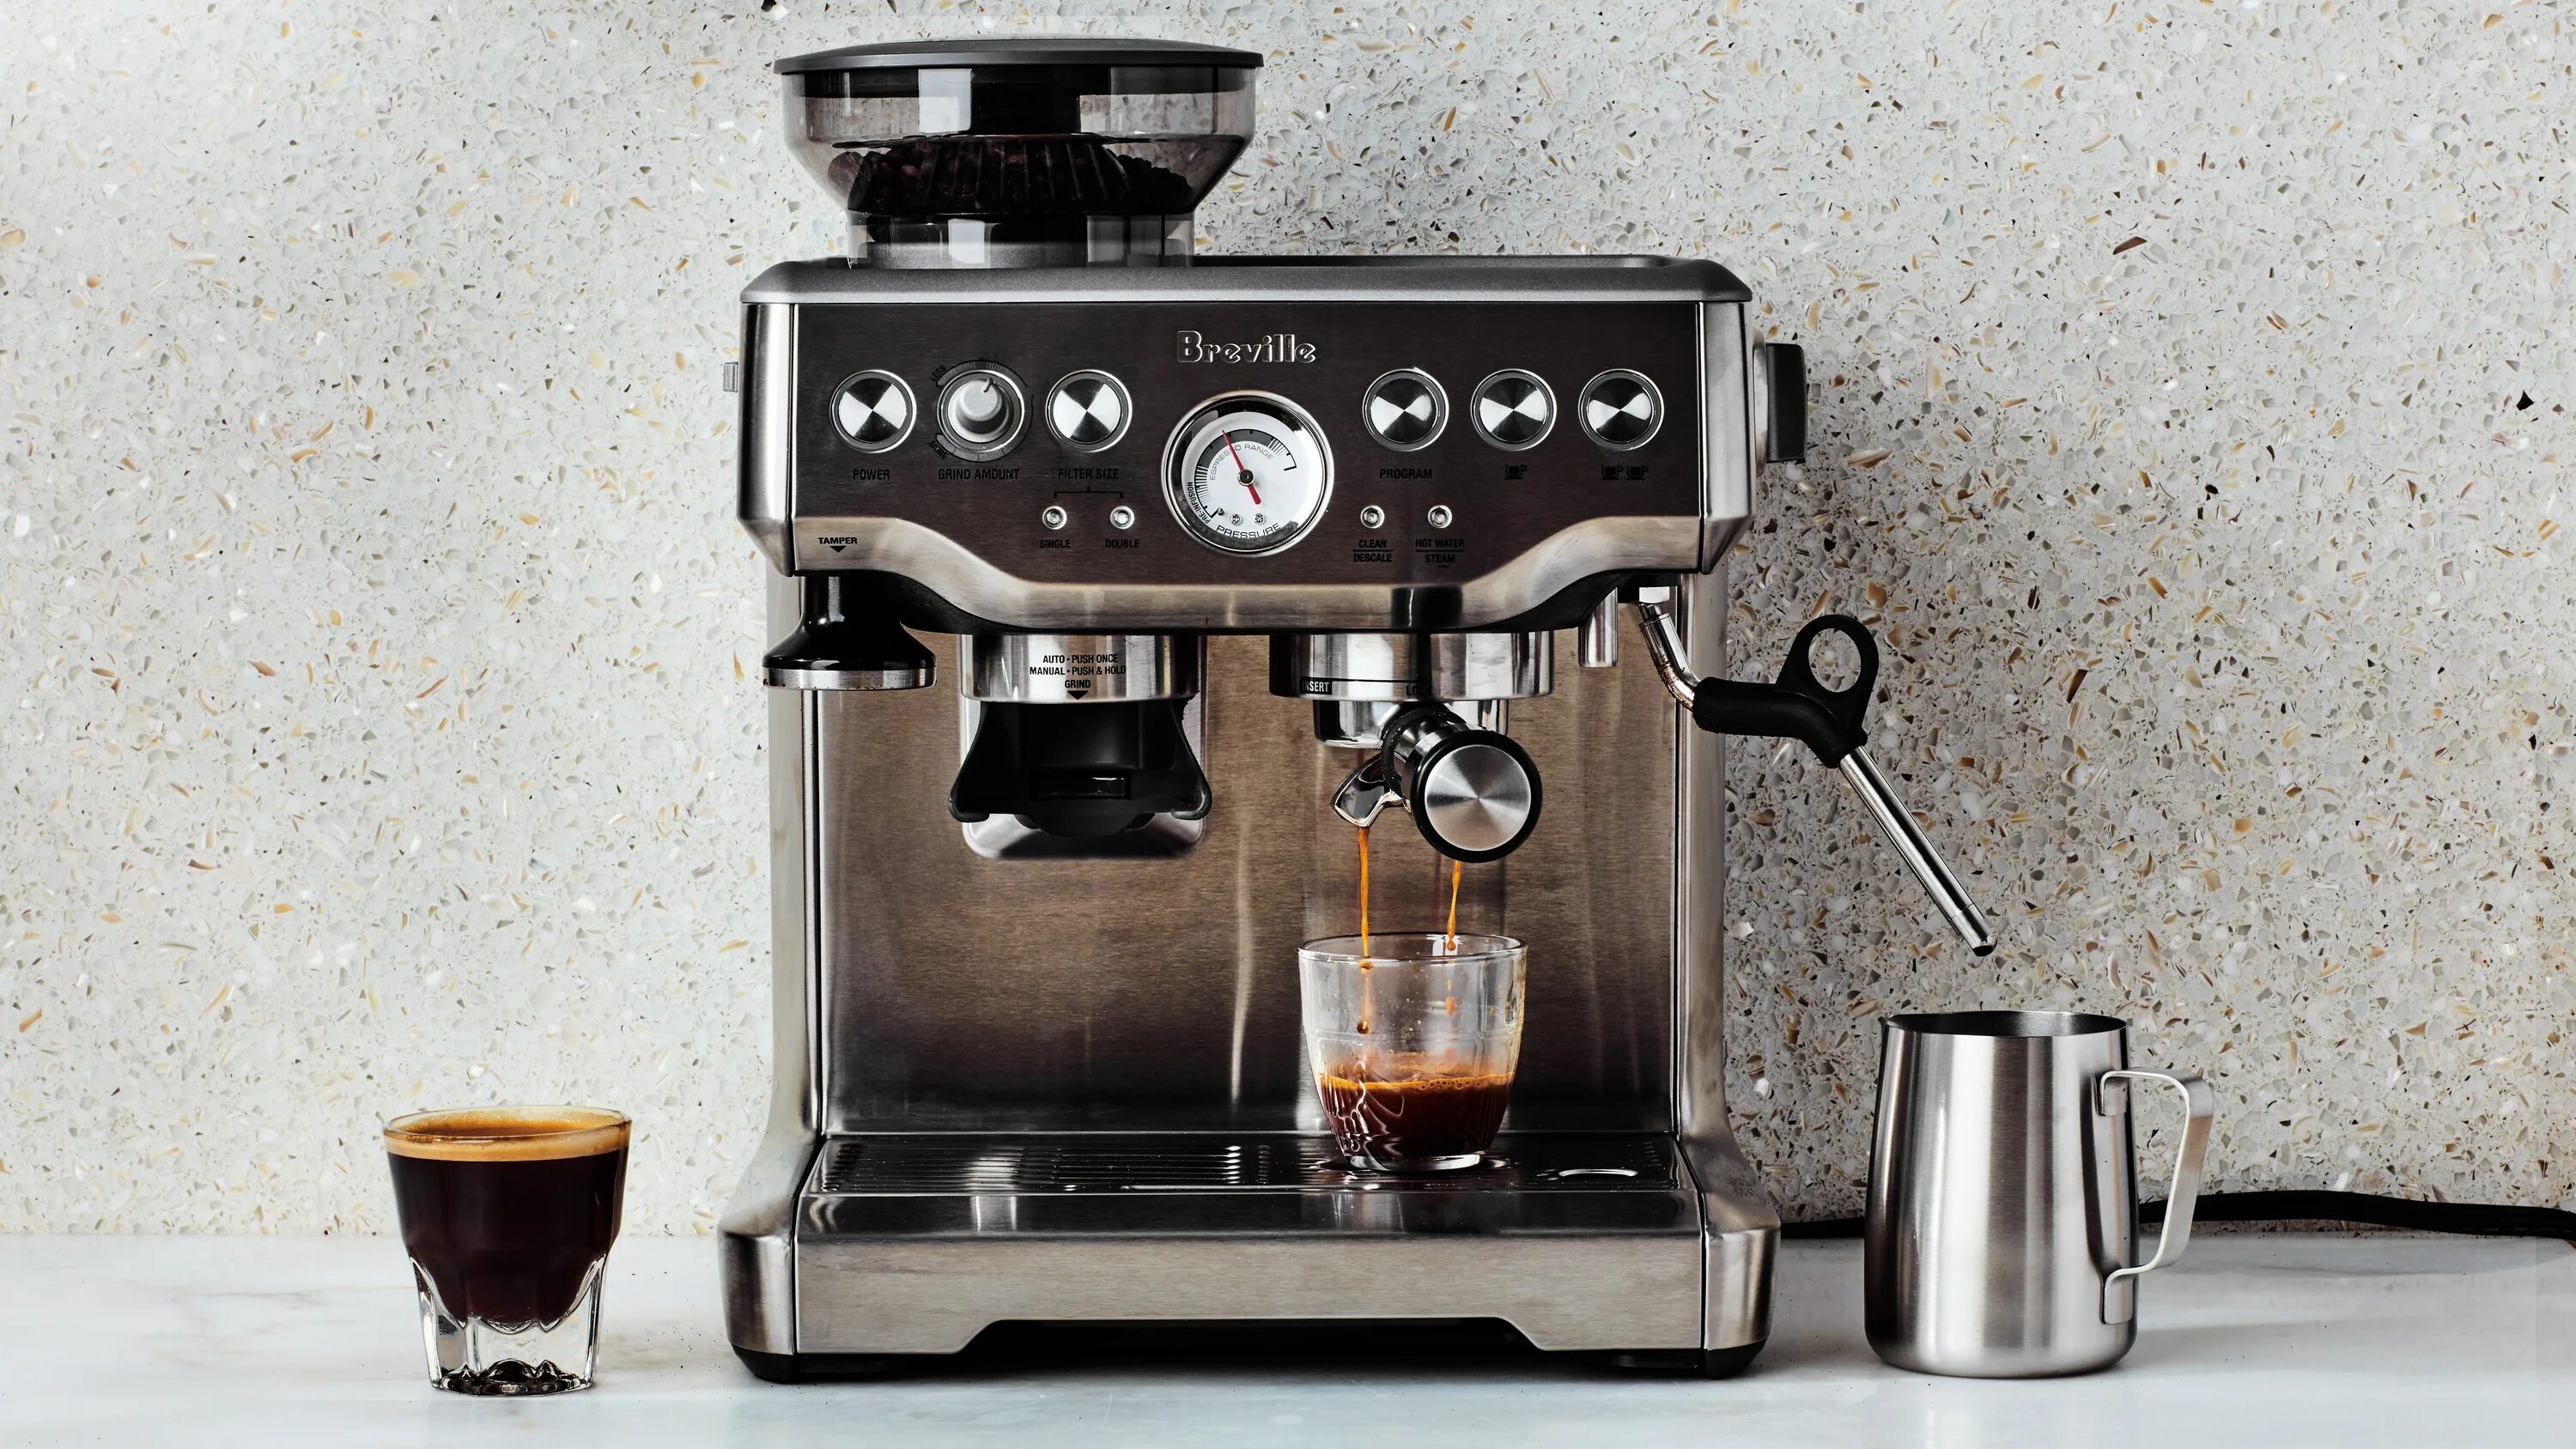 Кофемашина Espresso Coffee maker. Breville Cappuccino кофемашина. Кофейная станция Breville. Breville bes900xl. Приготовление кофе купить